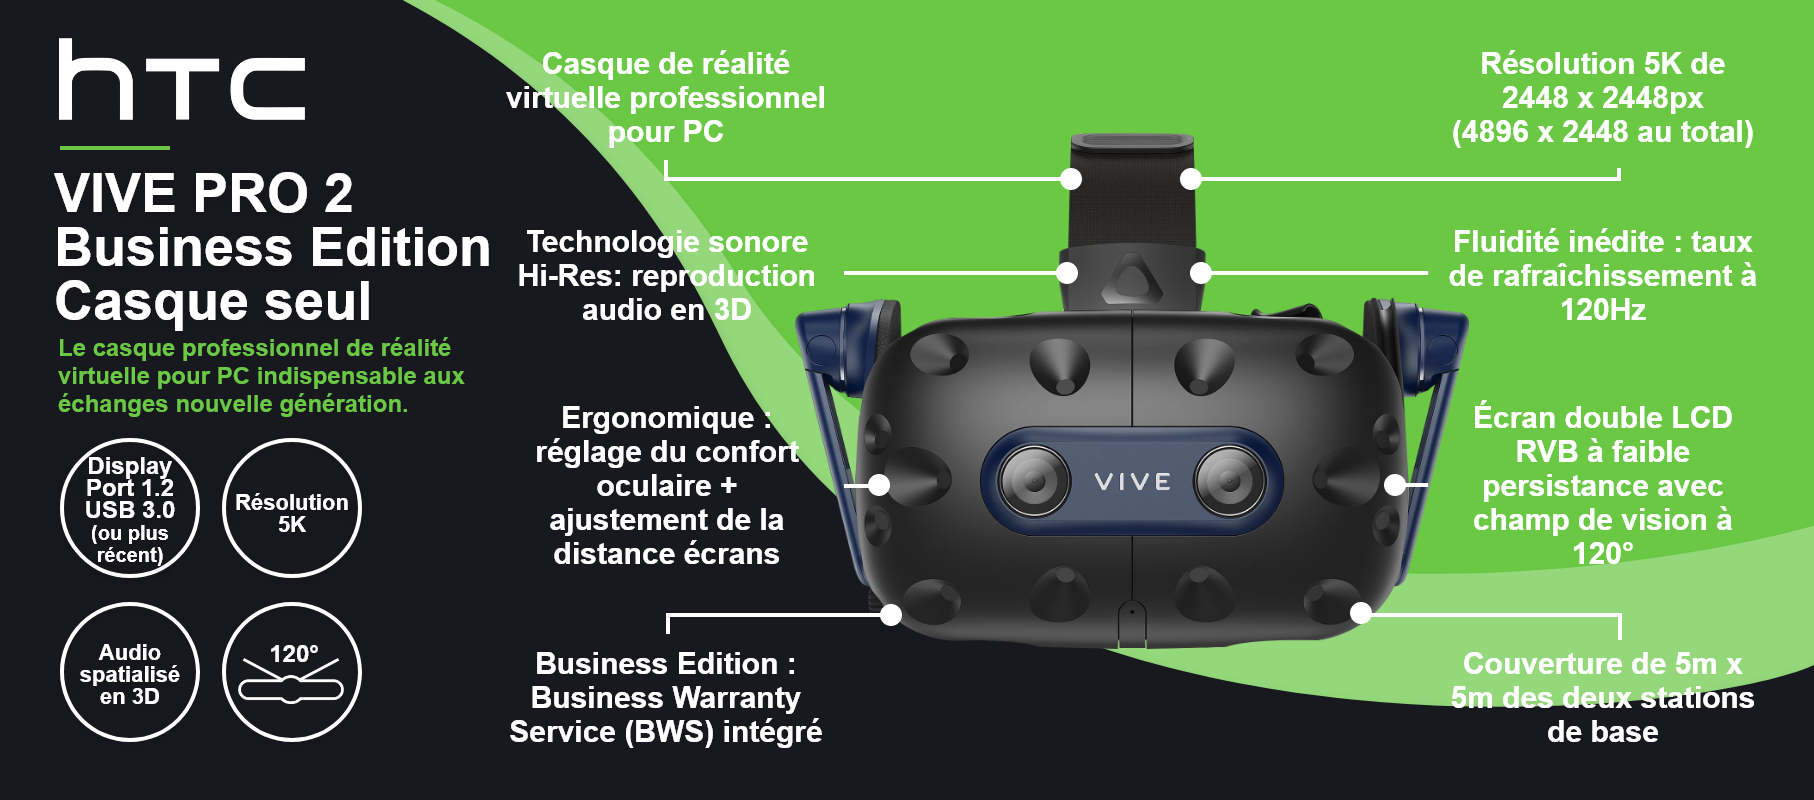 HTC VIVE PRO 2 Business Edition – Casque seul